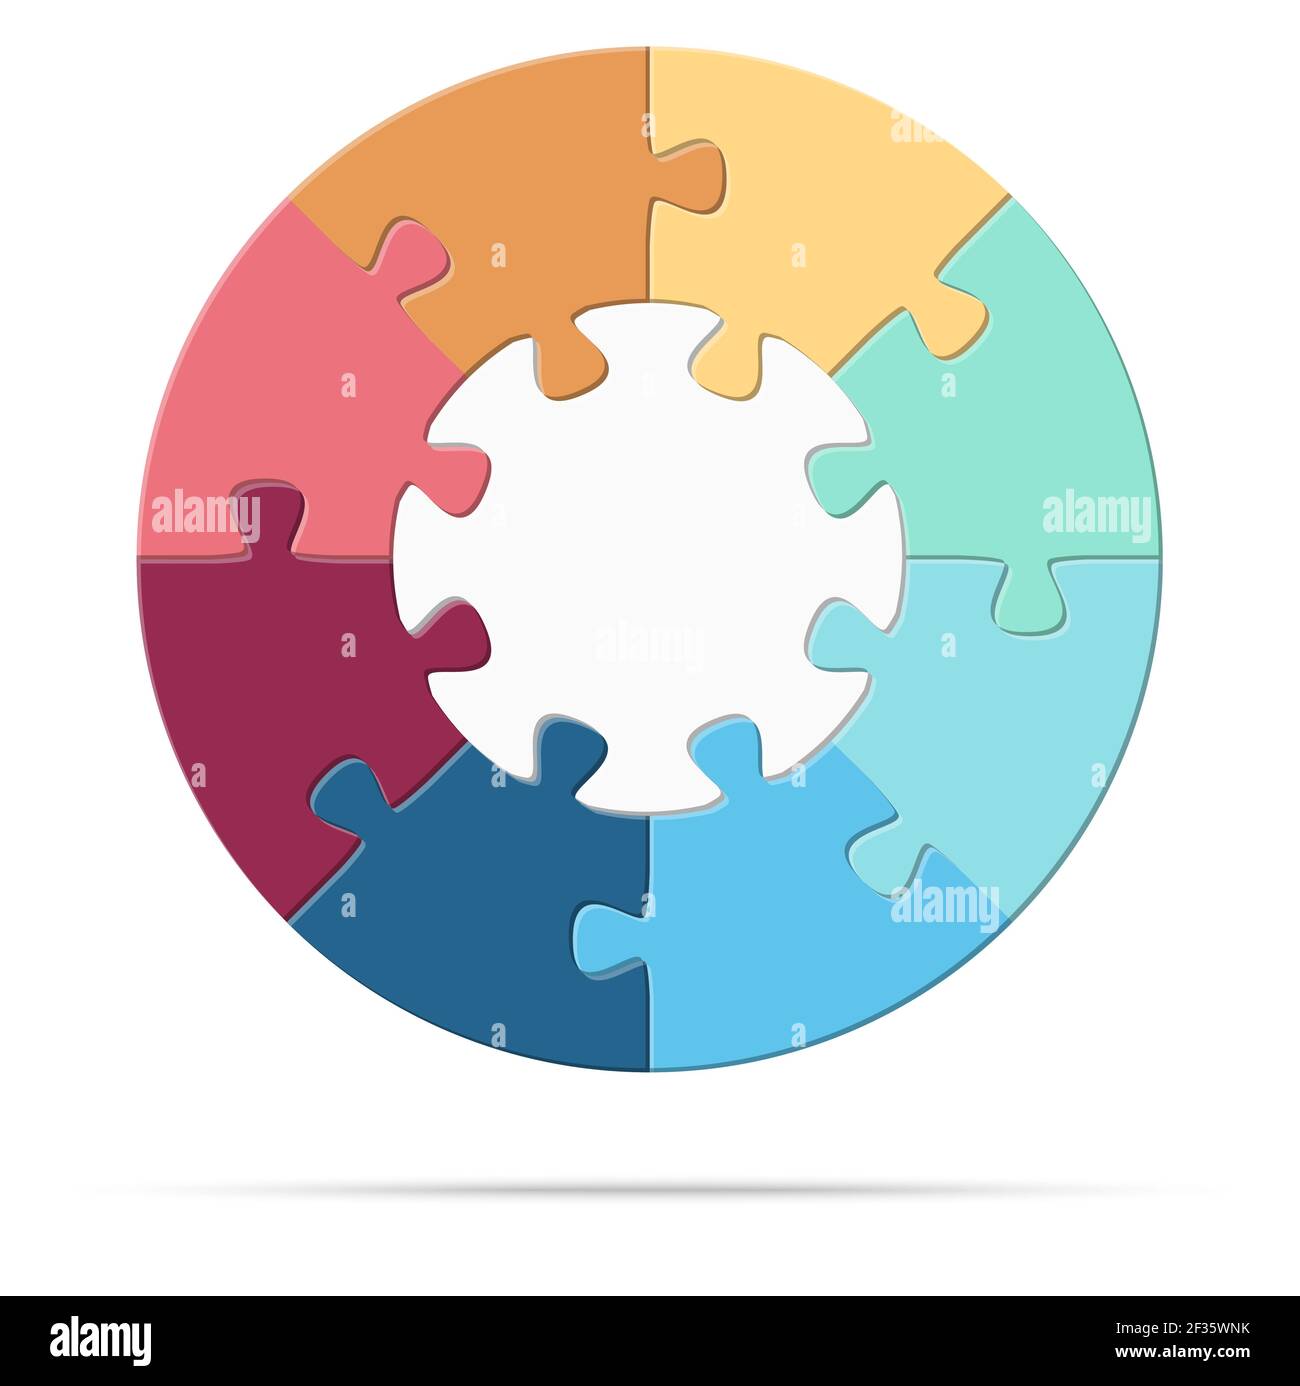 eps Vektor Illustration von runden farbigen Puzzle symbolisieren Zusammenarbeit oder Teamwork-Prozess mit weißer Basis, acht Optionen Idee Stock Vektor